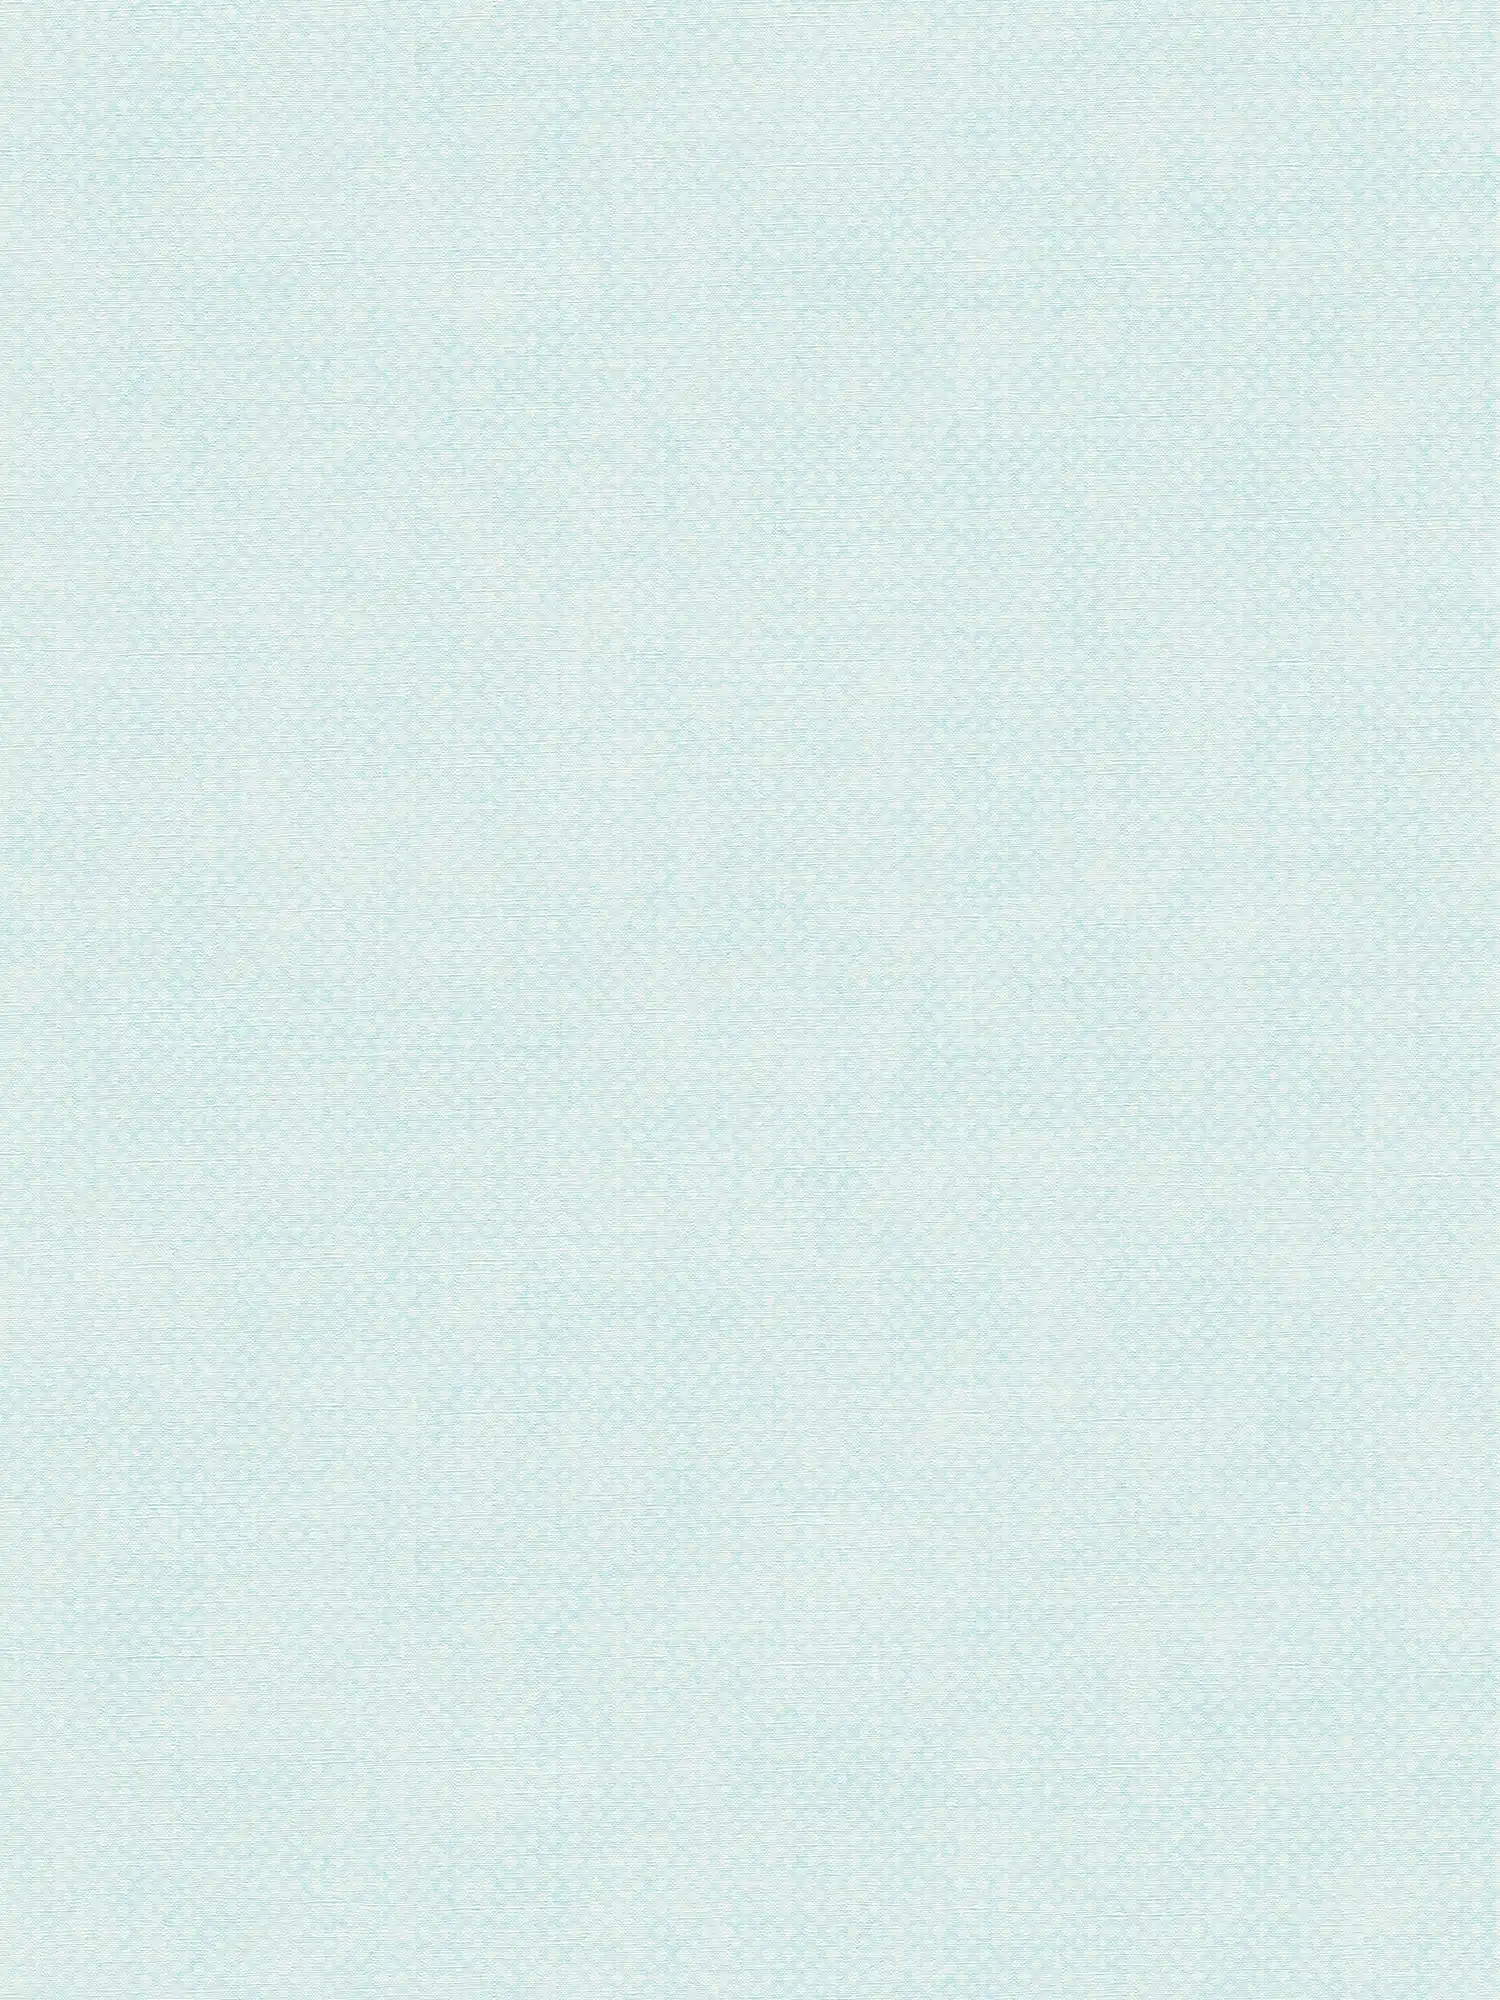 Carta da parati in tessuto non tessuto con motivo a trama fine - blu, bianco
